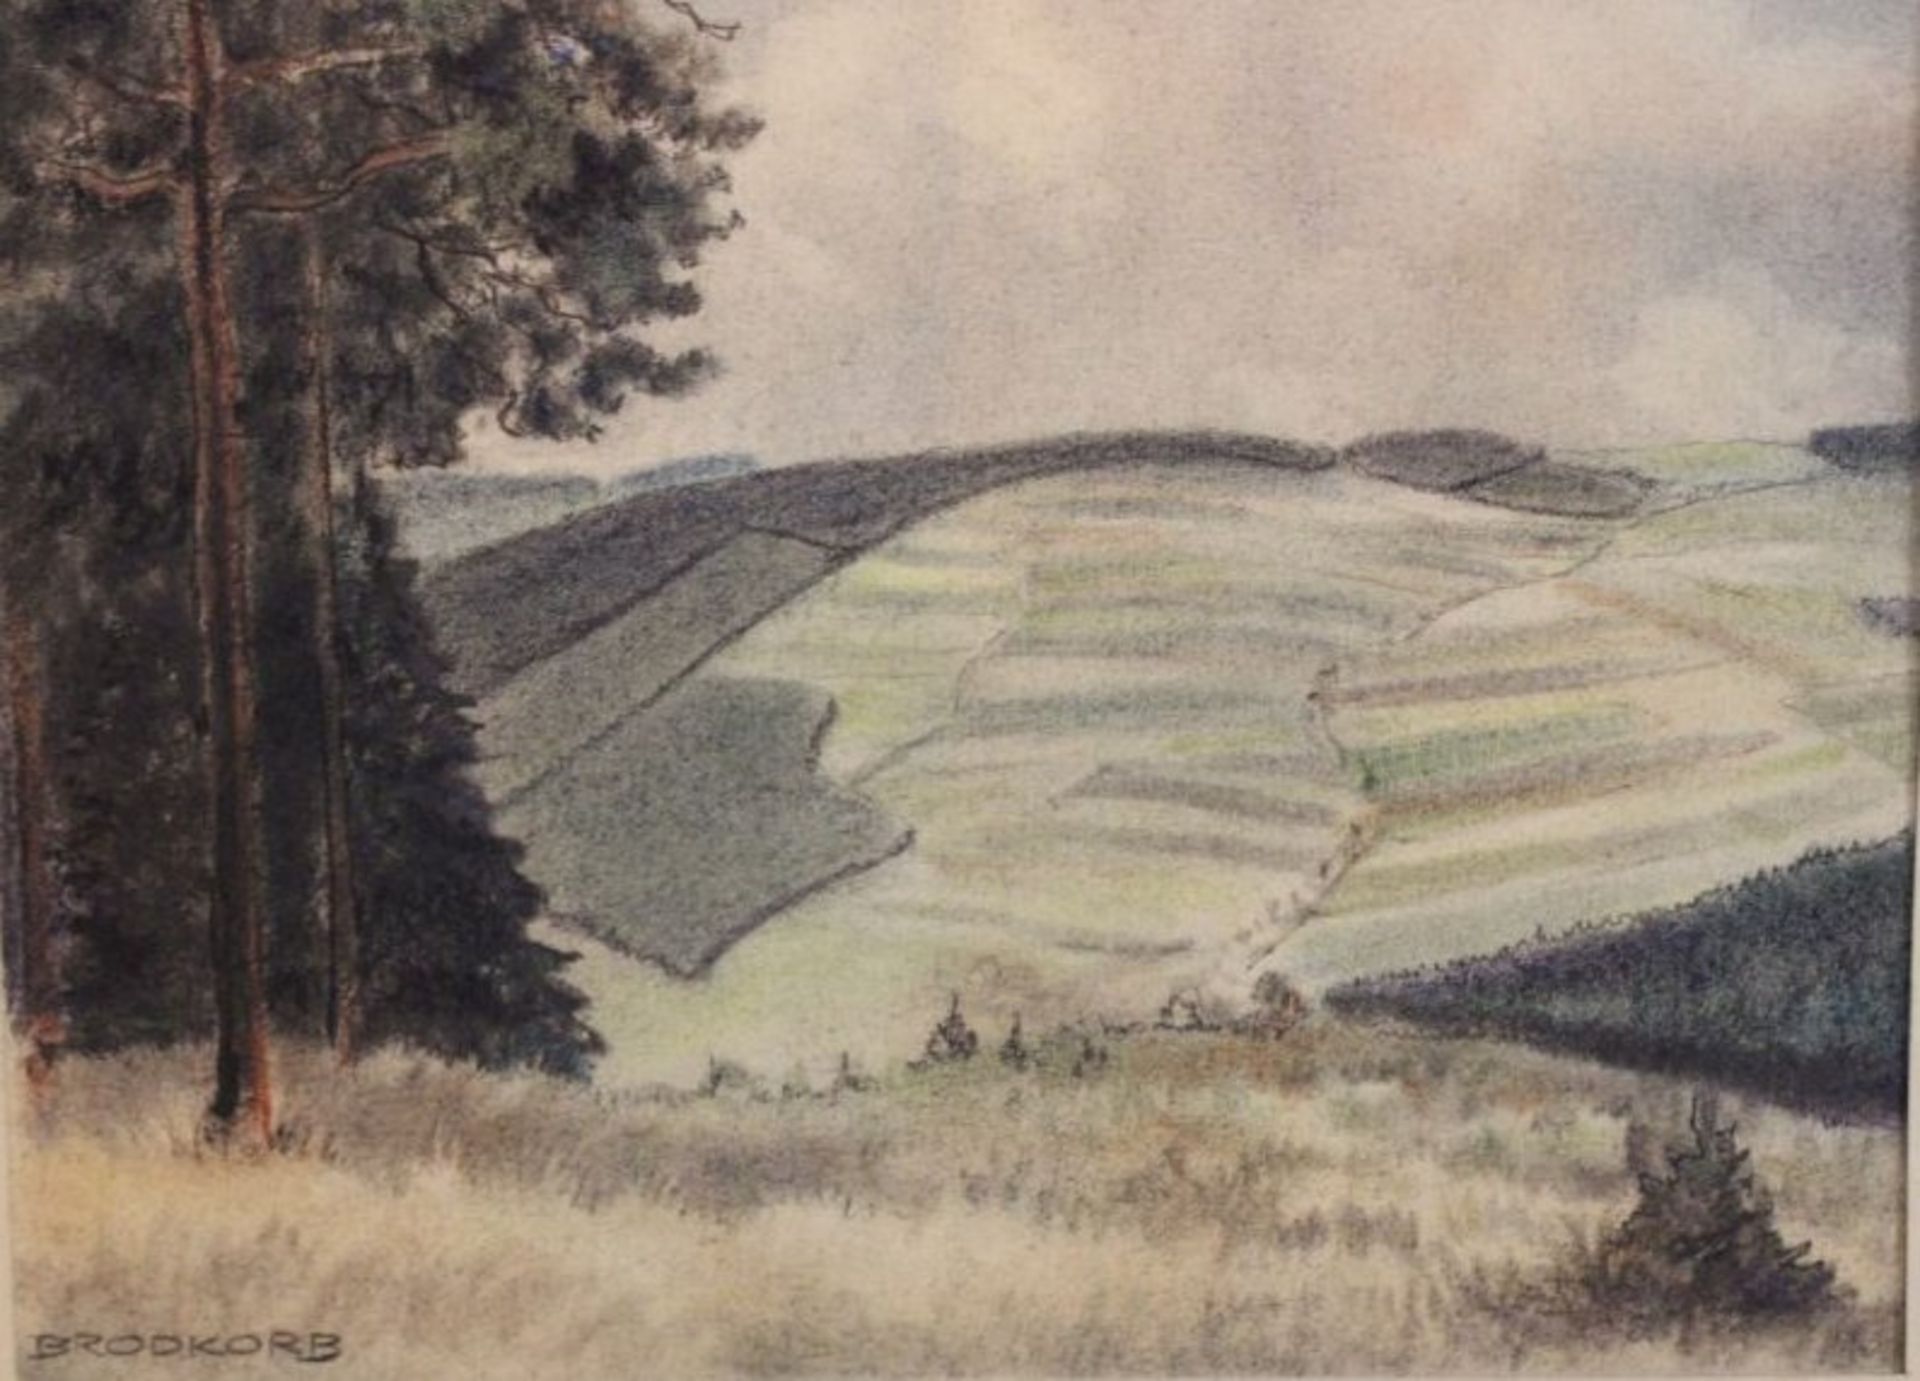 Erich BRODKORB (1896-1968), Landschaft Erzgebirge, Zeichnung, verso betitelt, ungerahmt, 33 x 42cm.